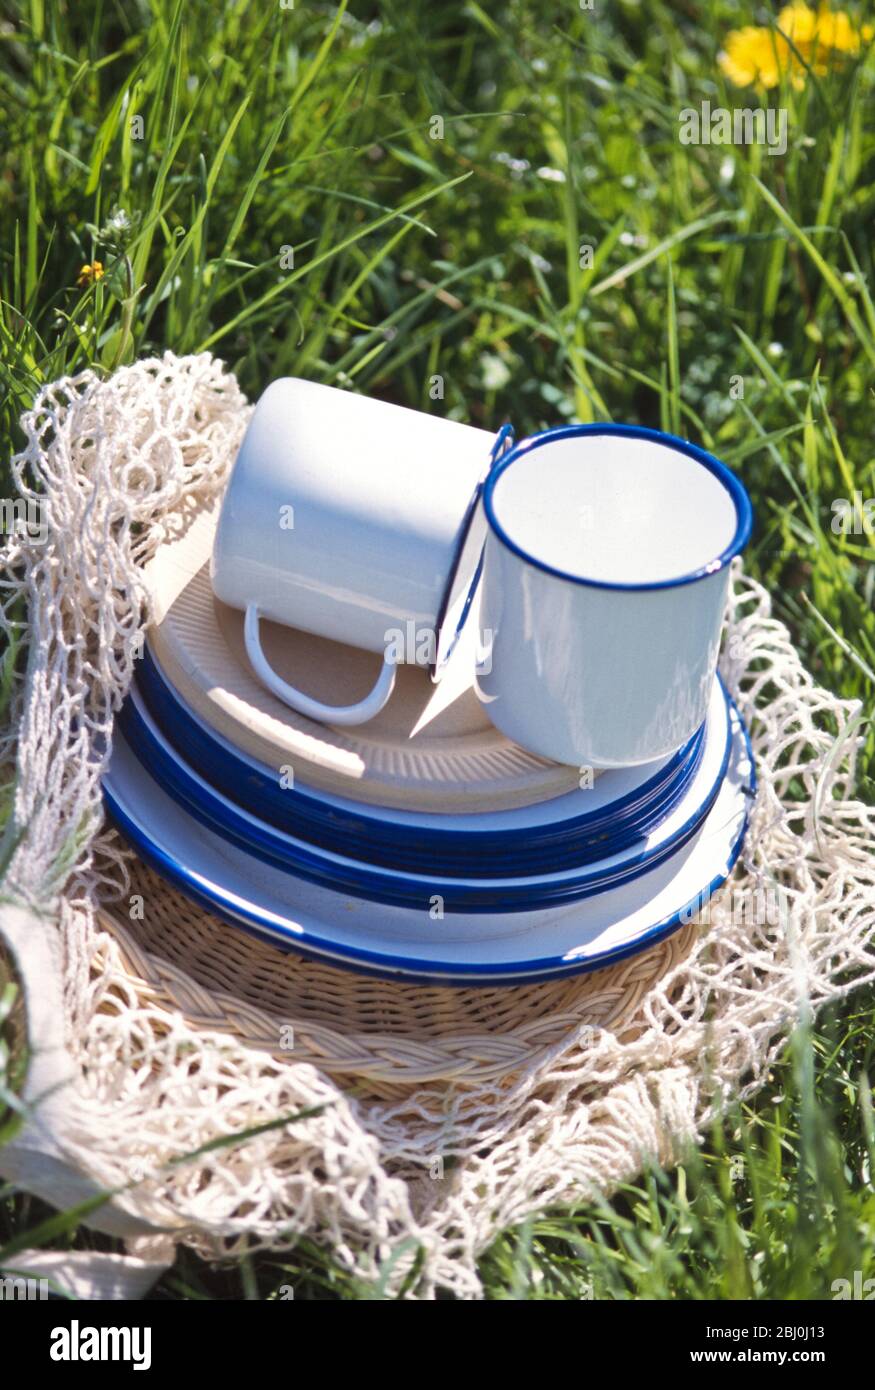 Bicchieri e piattini di smalto e carta accumulati su un sacchetto a stringa sull'erba - parte di un pic-nic primavera - Foto Stock